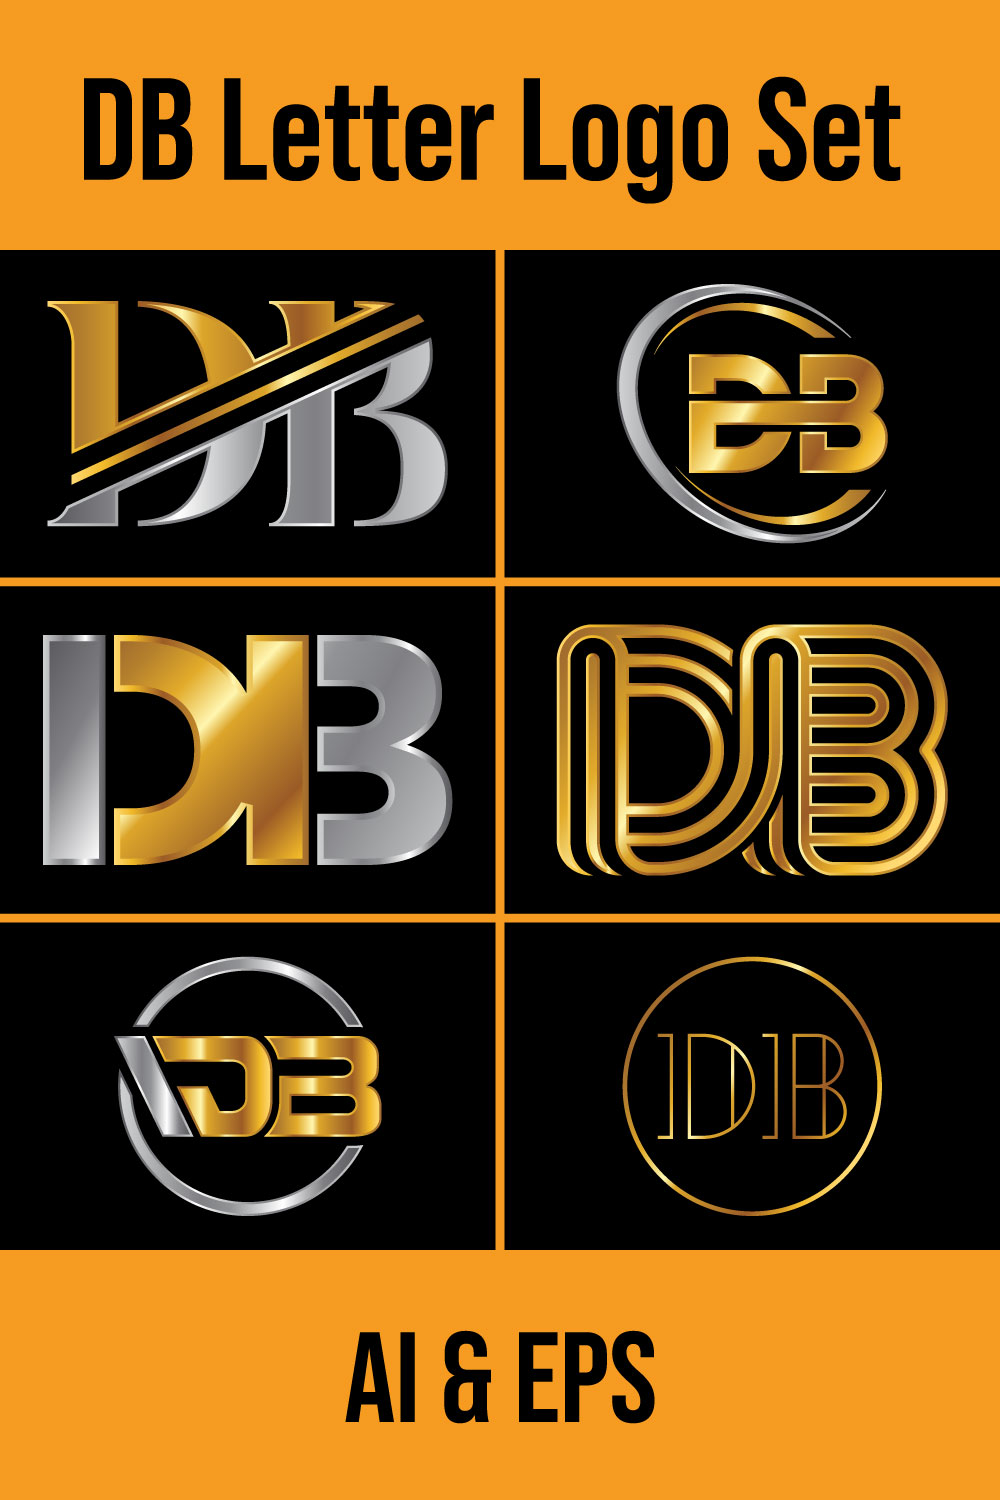 Letter D-B Logo Design Vector Template pinterest image.